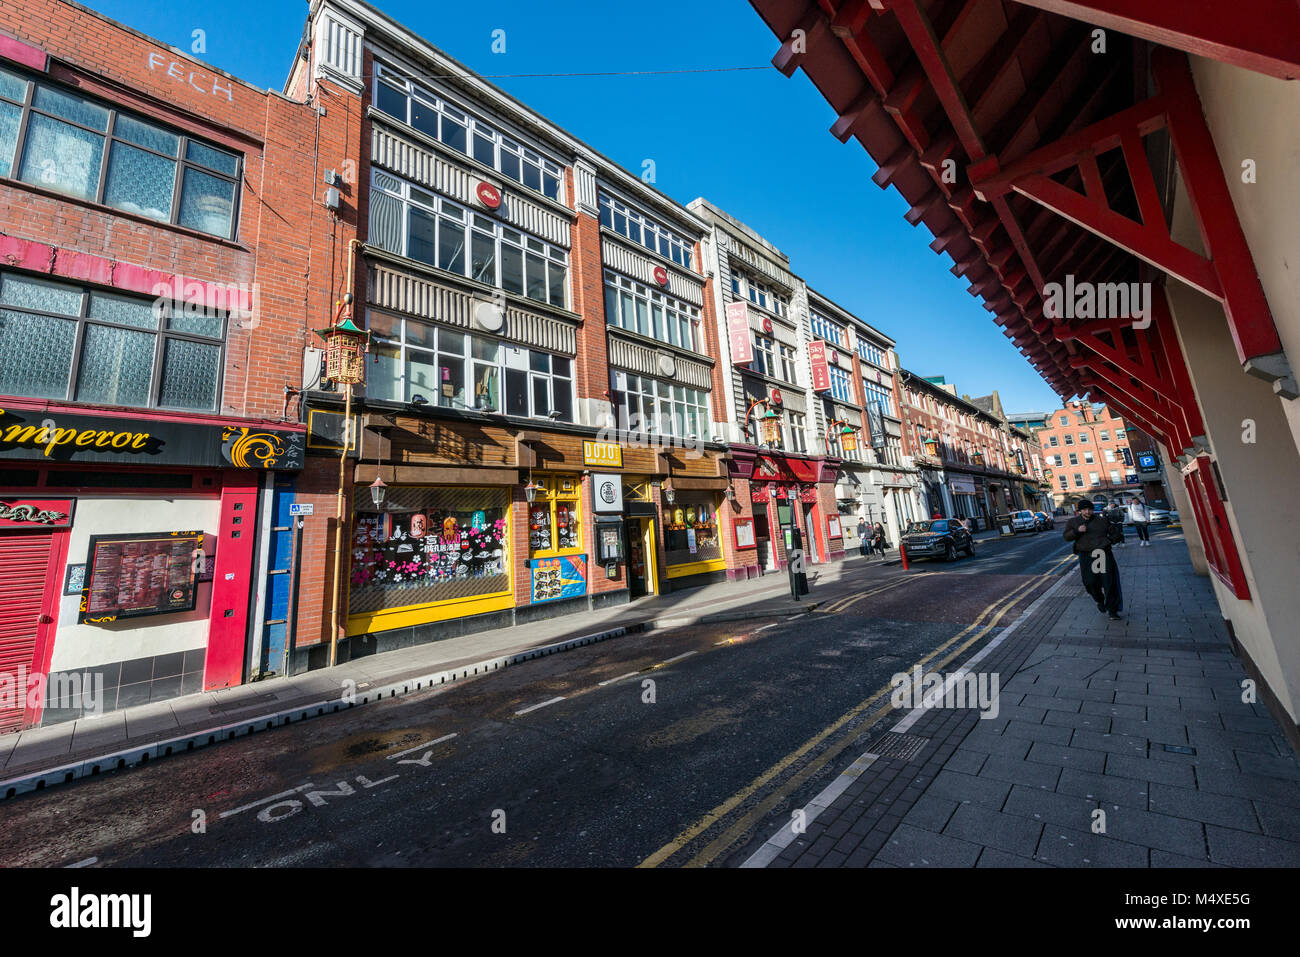 Chinatown, Newcastle upon Tyne, UK Stock Photo